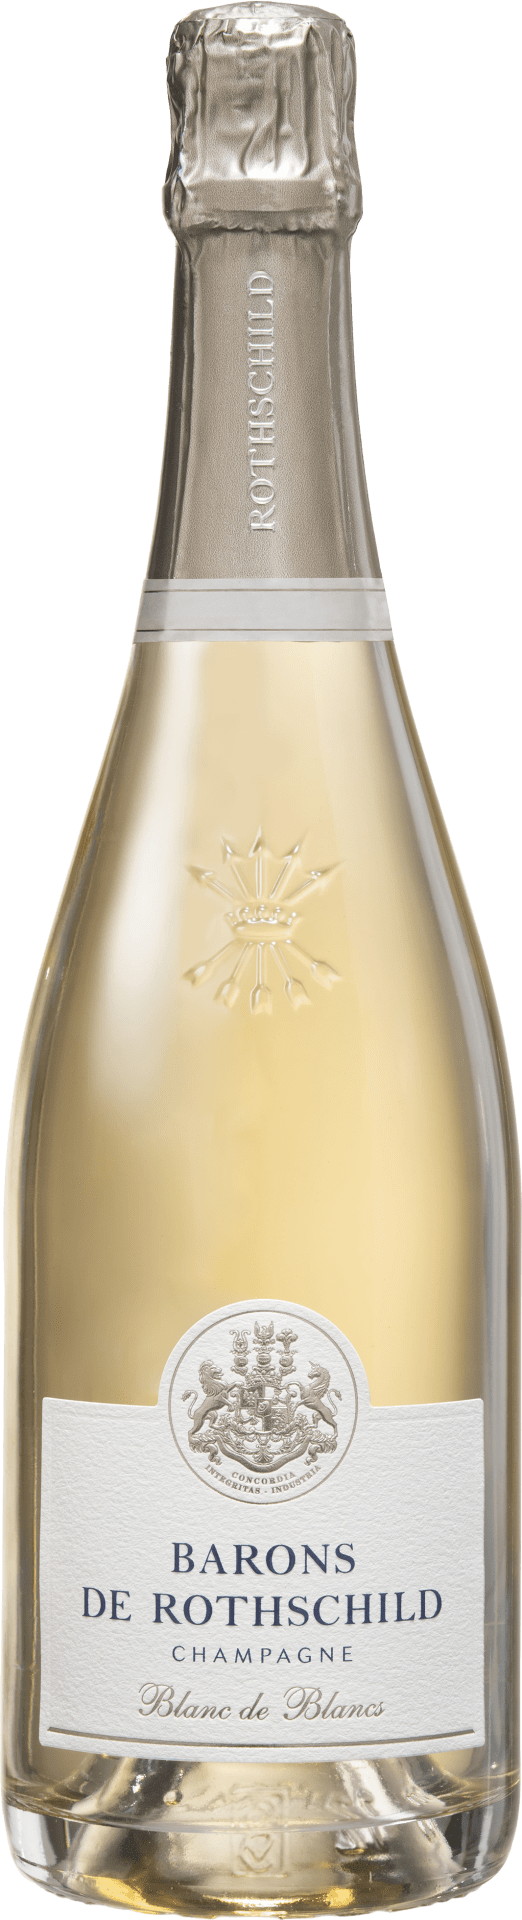 Champagne Barons de Rothschild Brut, Blanc de Blancs